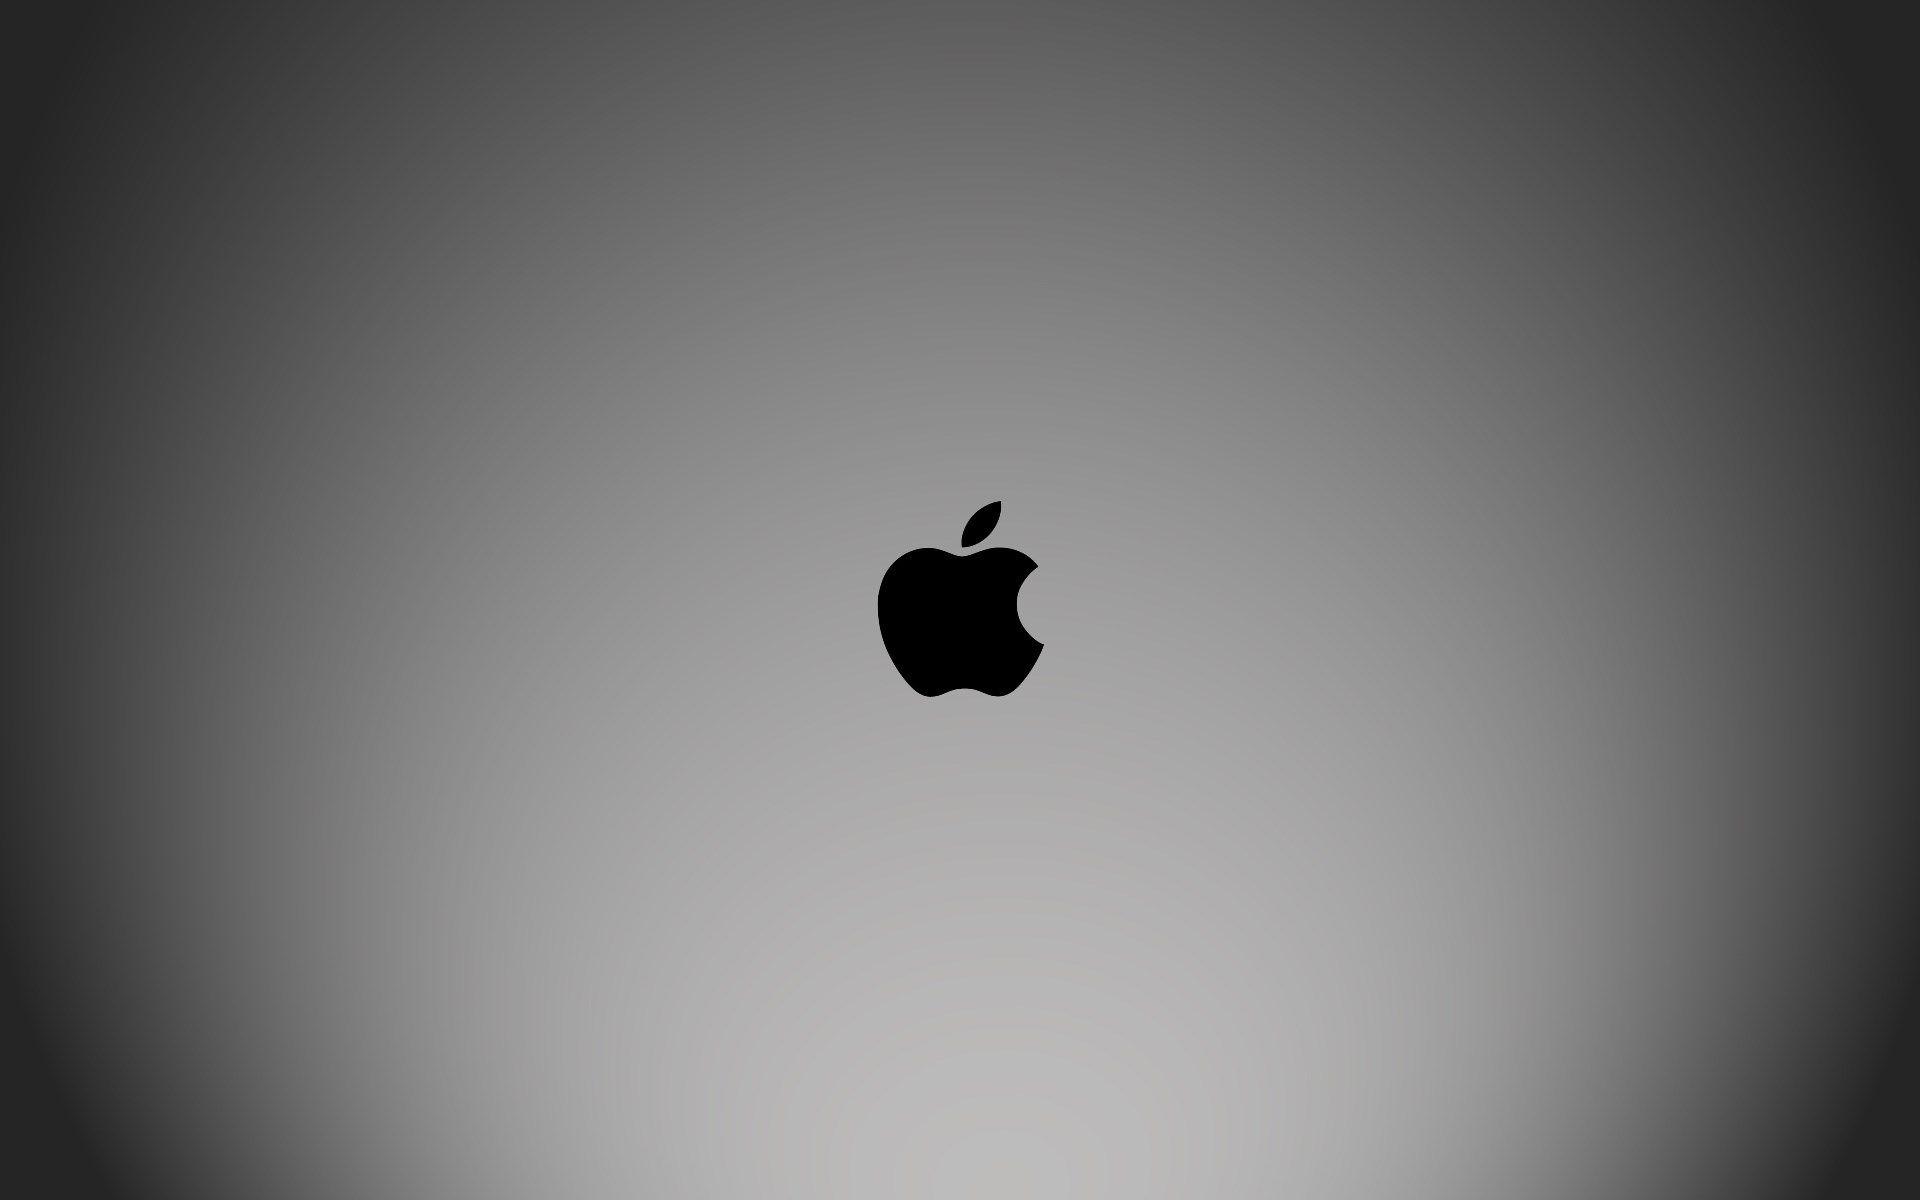 Apple Desktop Wallpapers - Top Free